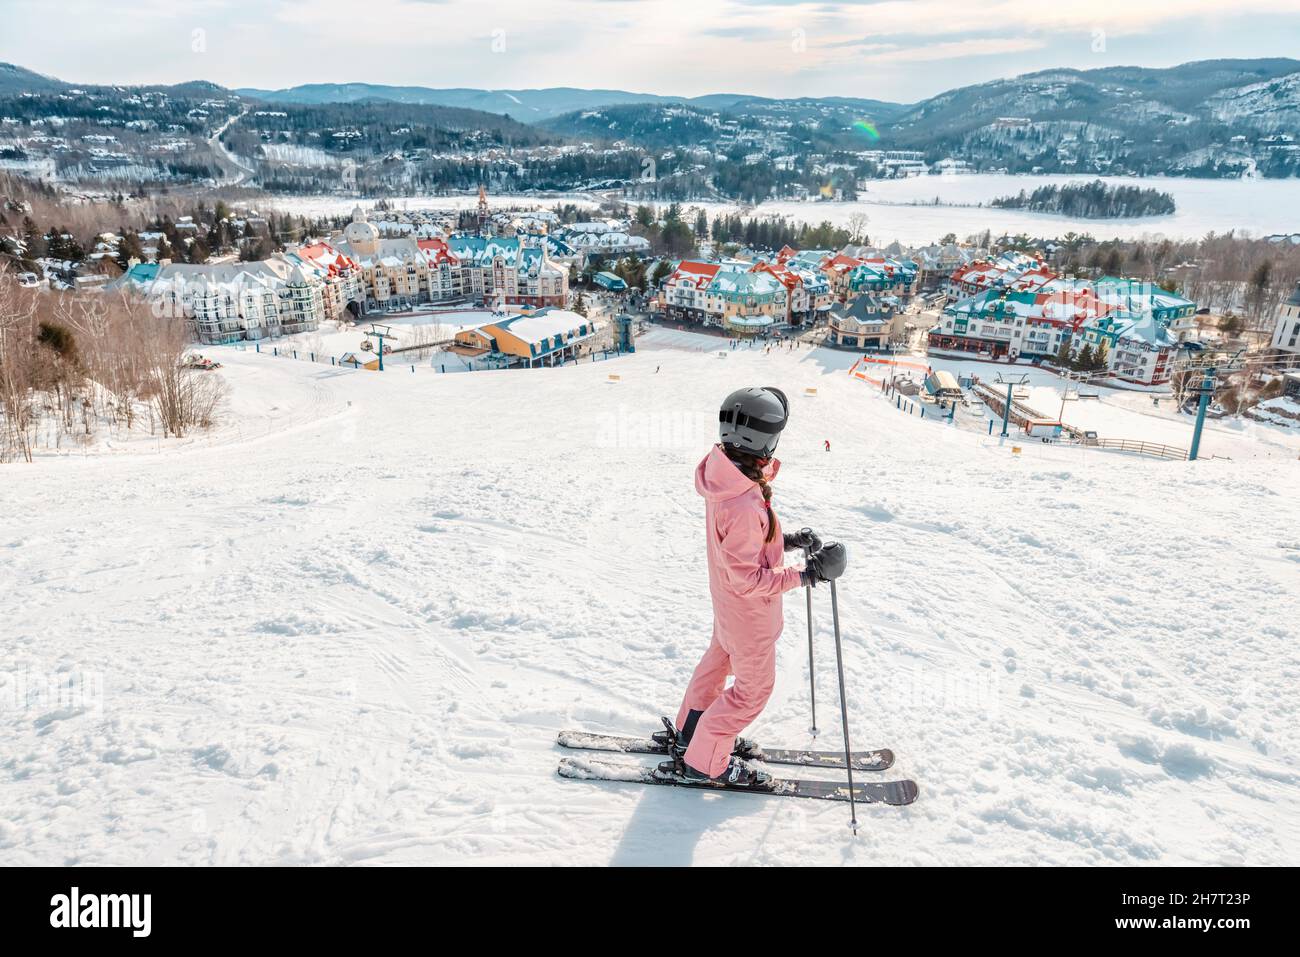 Mujer de esquí. Esquí alpino - vista de la estación de esquí de pueblo de montaña que mira a un esquiador empezando a esquiar cuesta abajo en pistas de esquí cubiertas de nieve en invierno. Mont Foto de stock